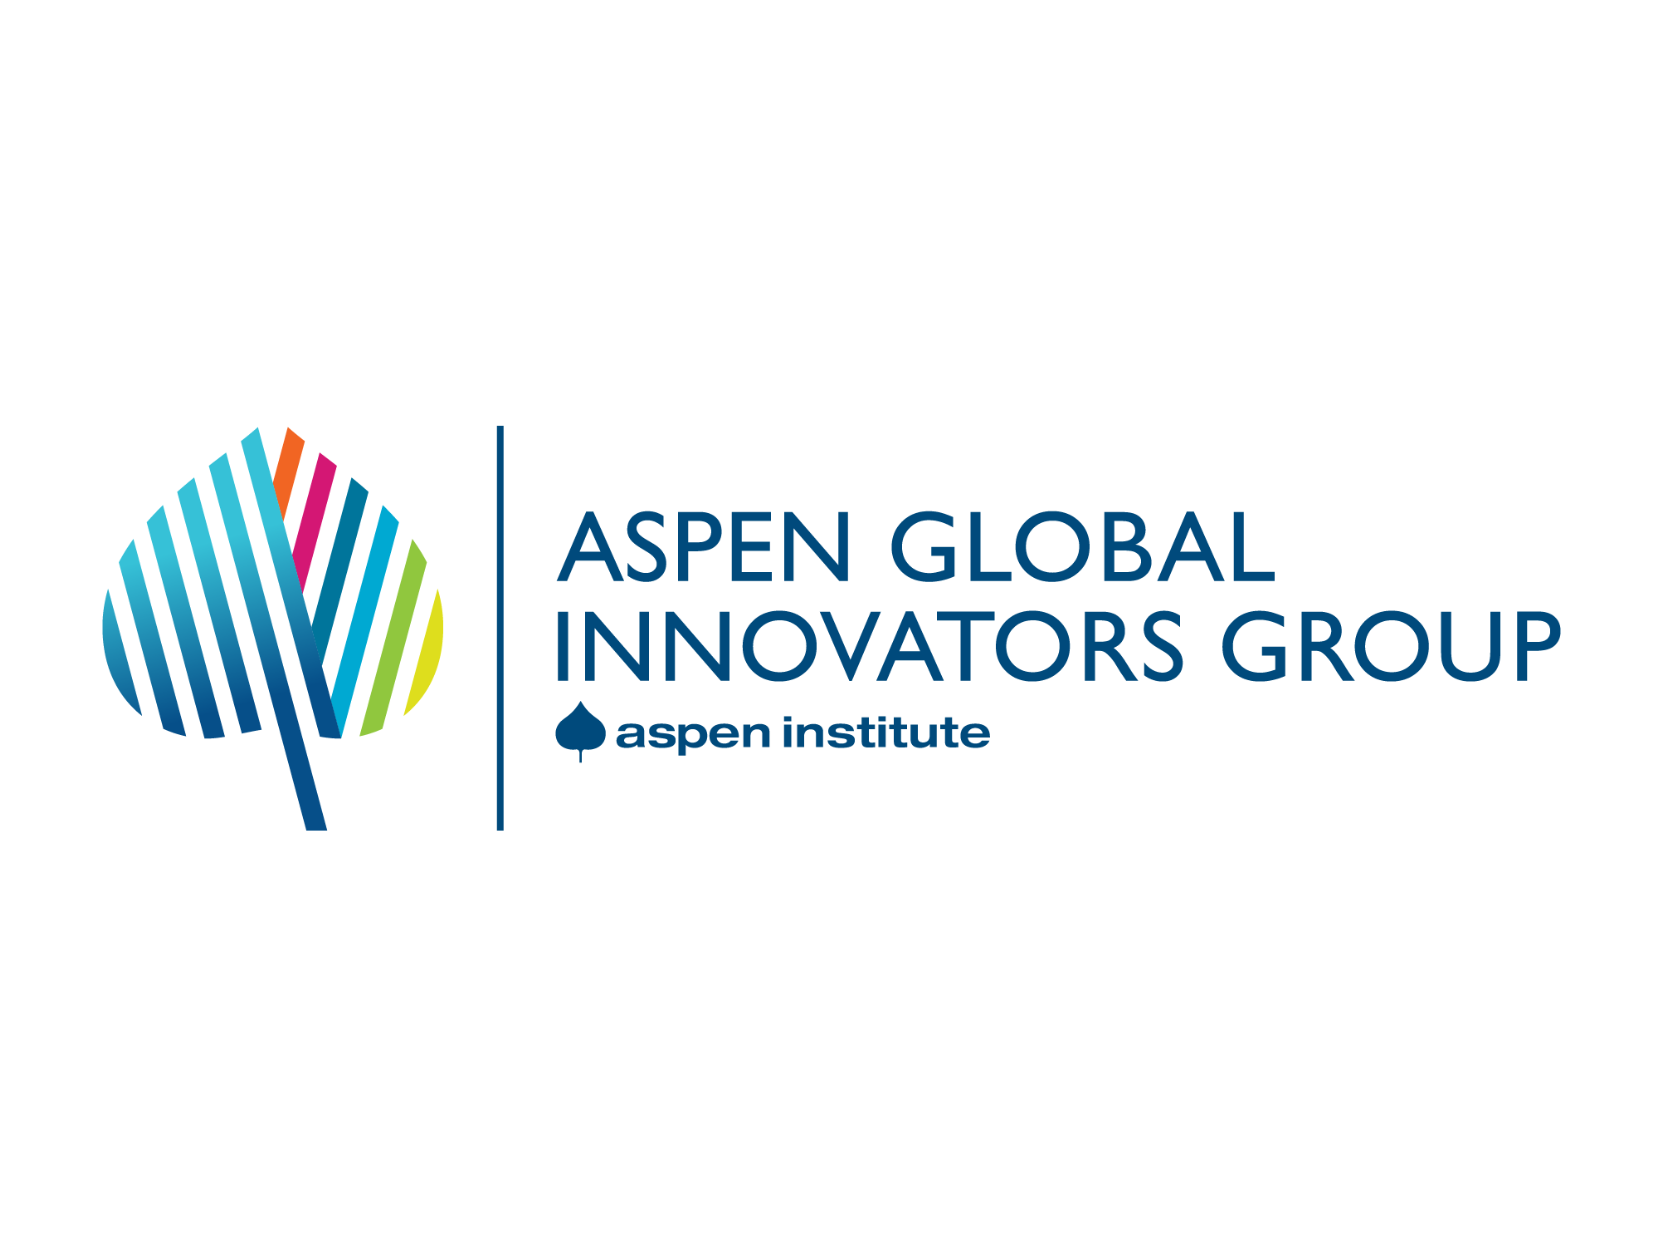 Aspen Global Innovators Group